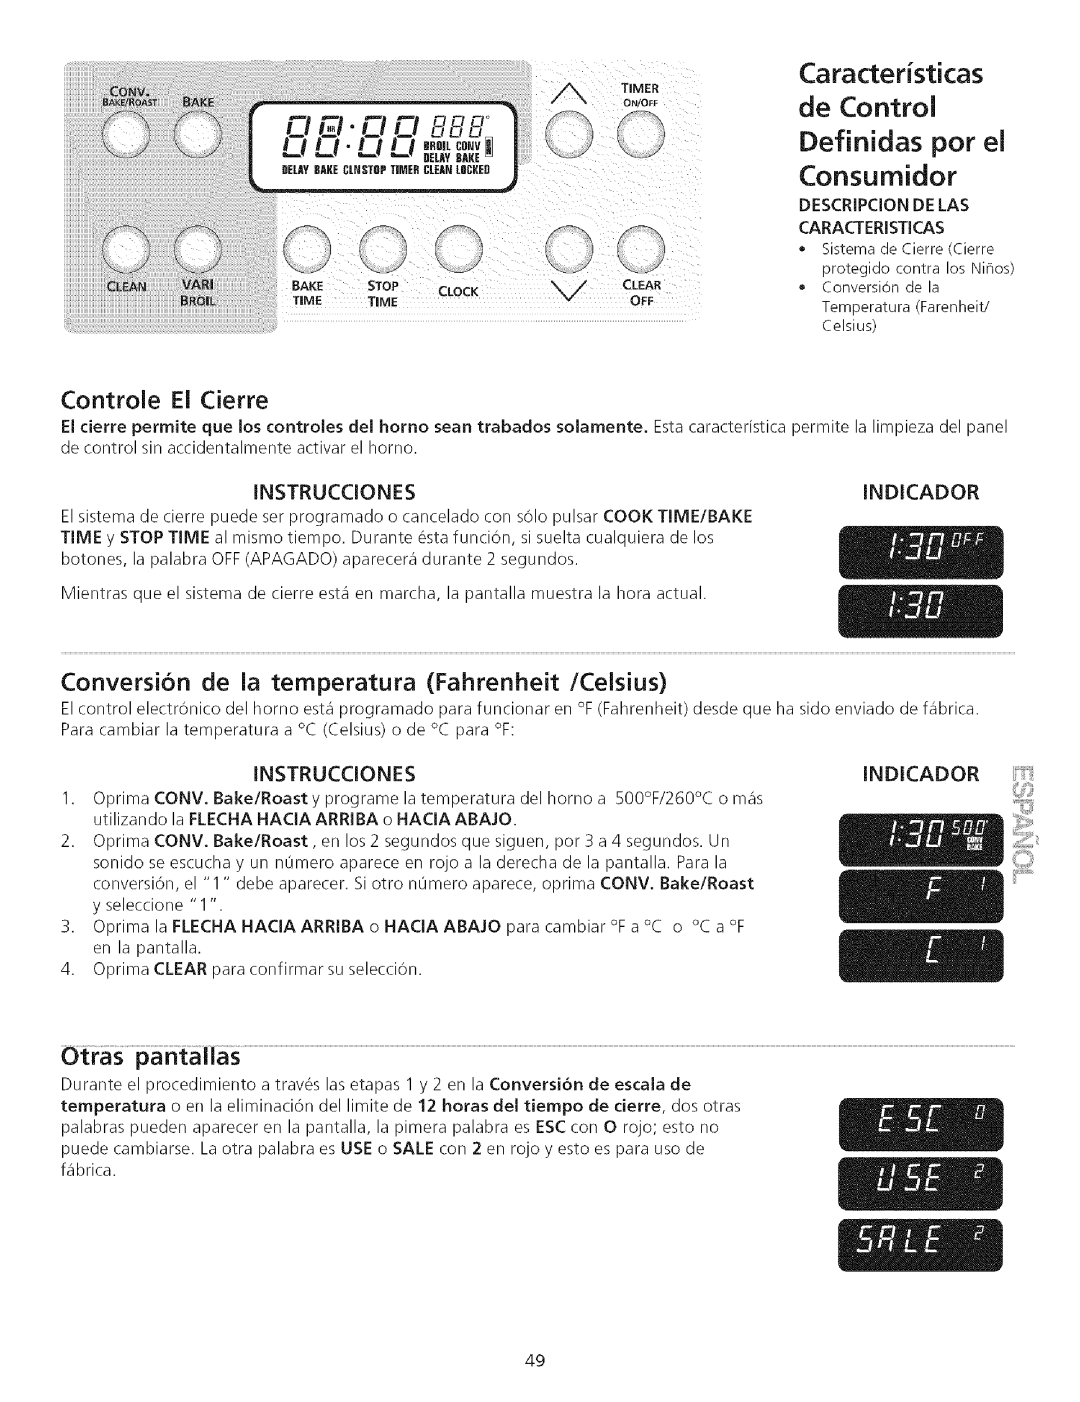 Kenmore 790.75503 manual de Control Definidas por el Consumidor, Caracteristicas 